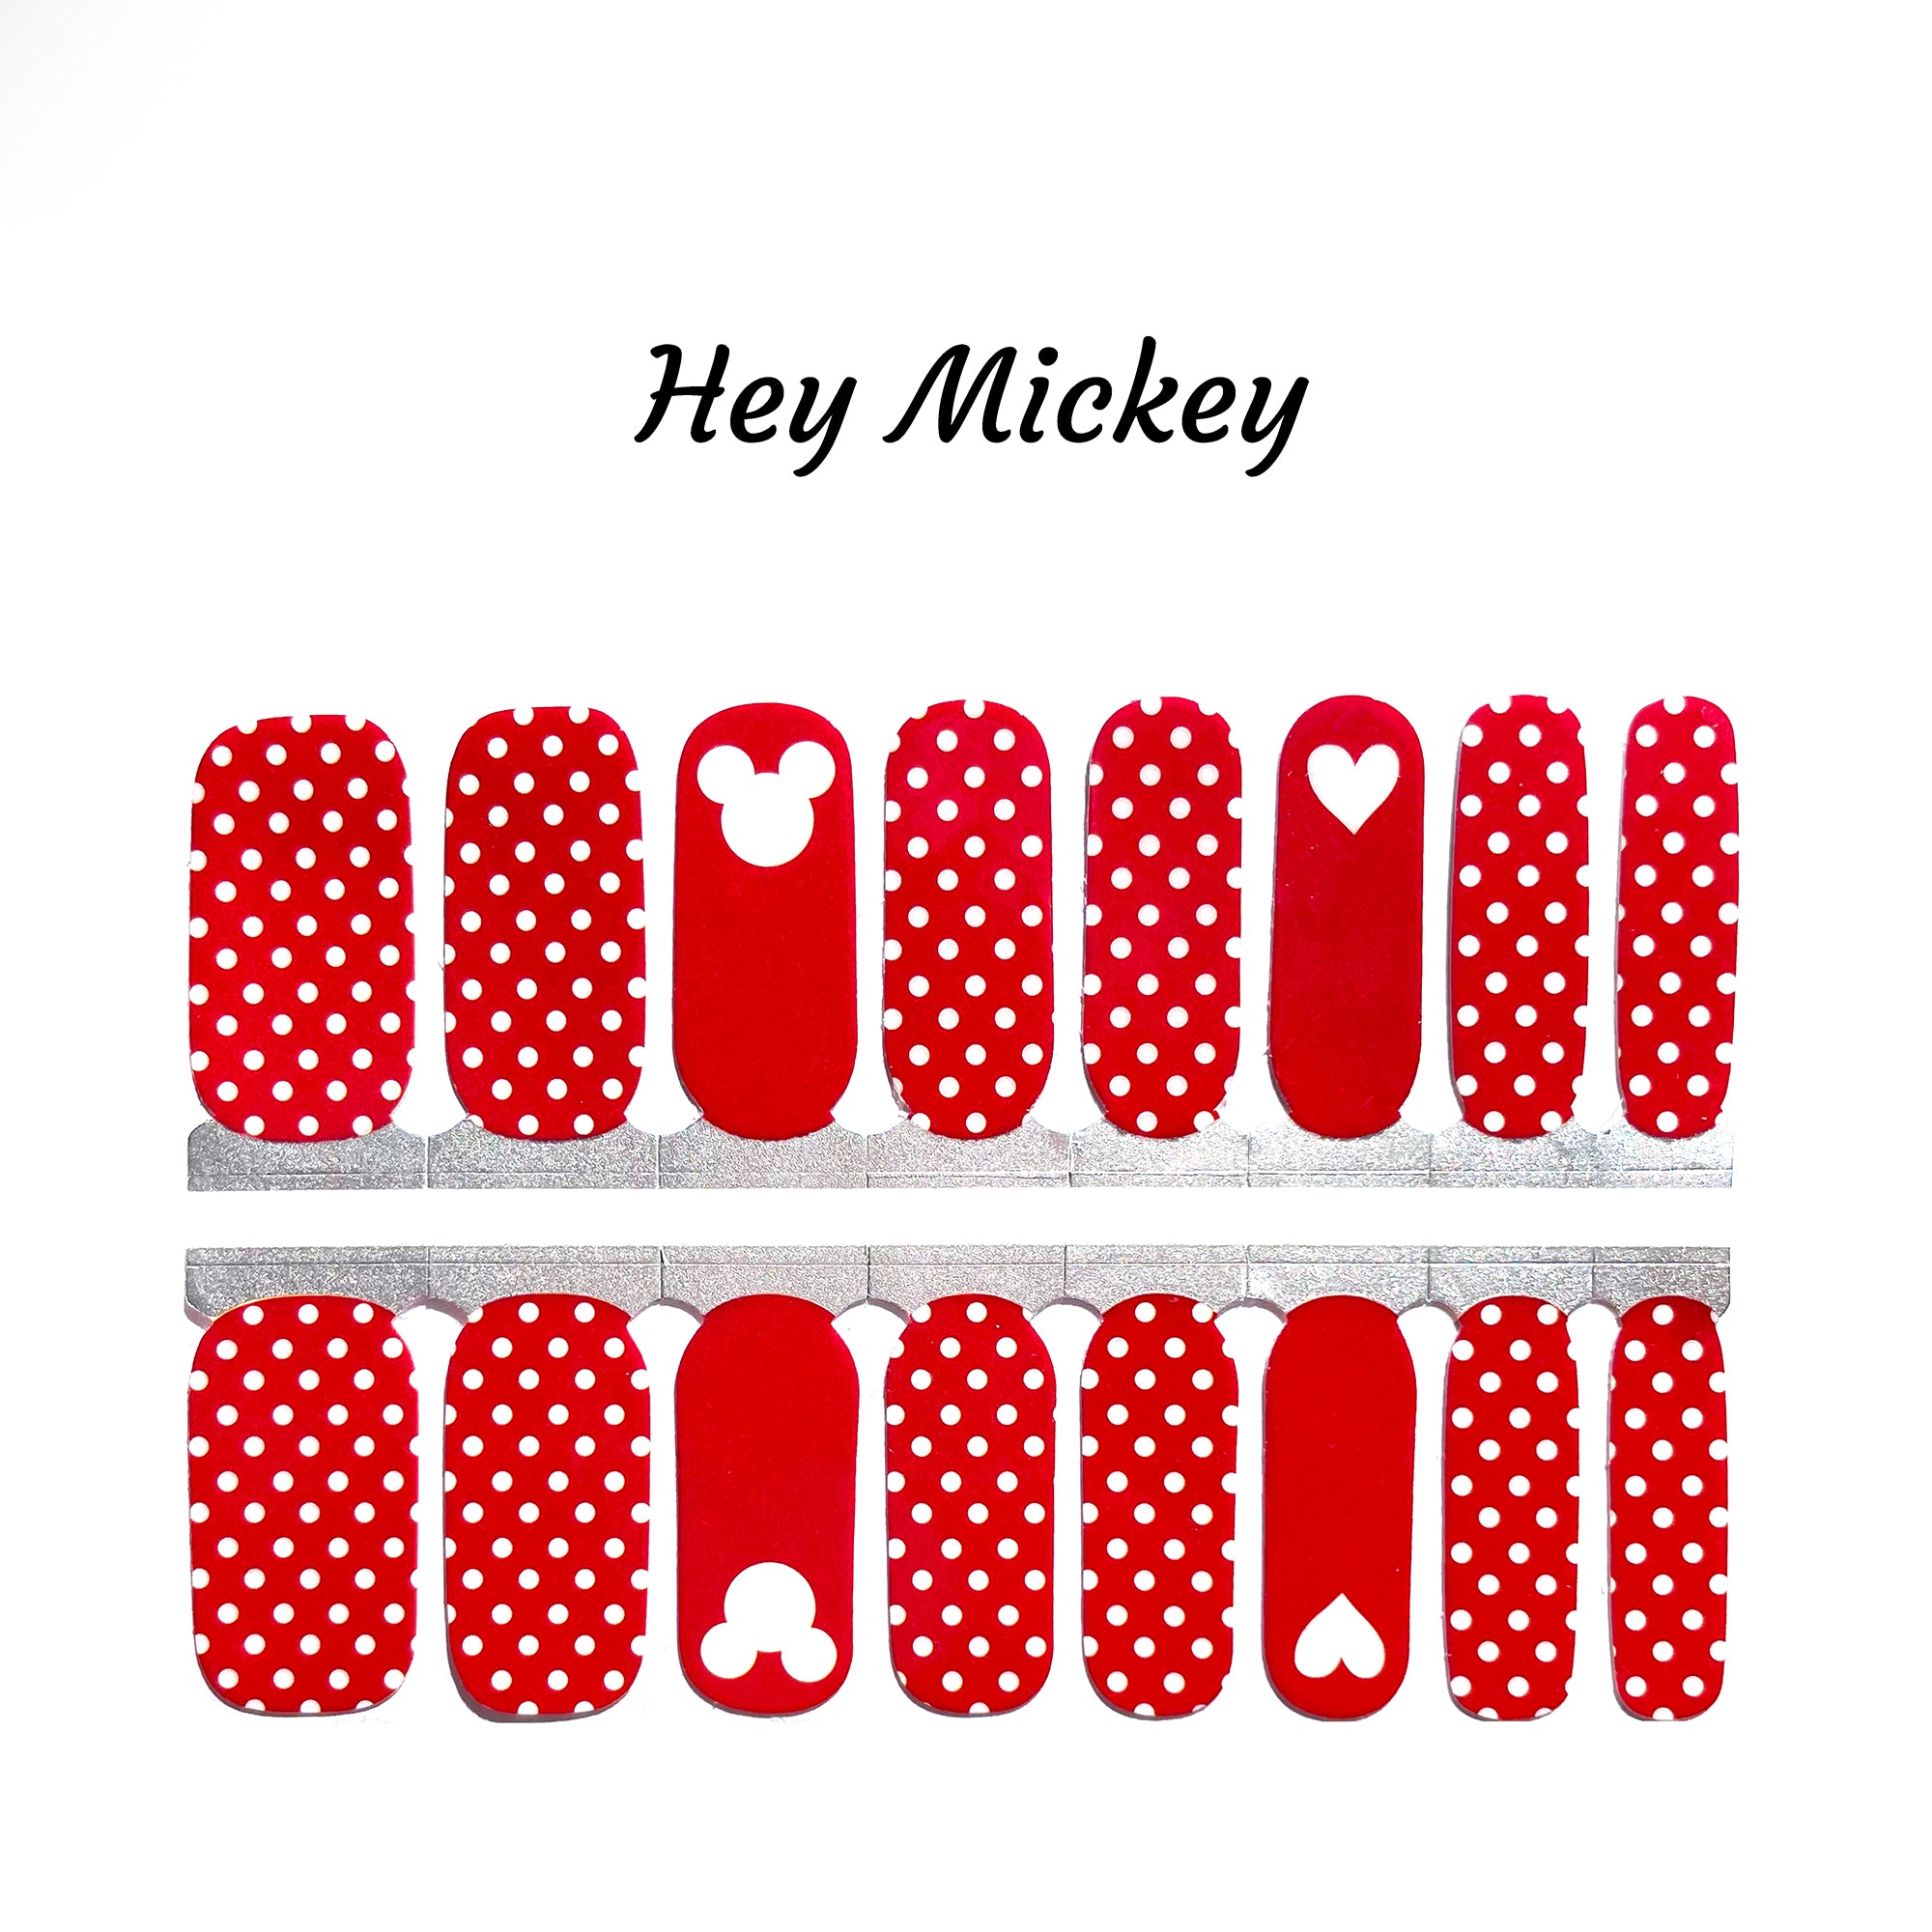 Hey Mickey